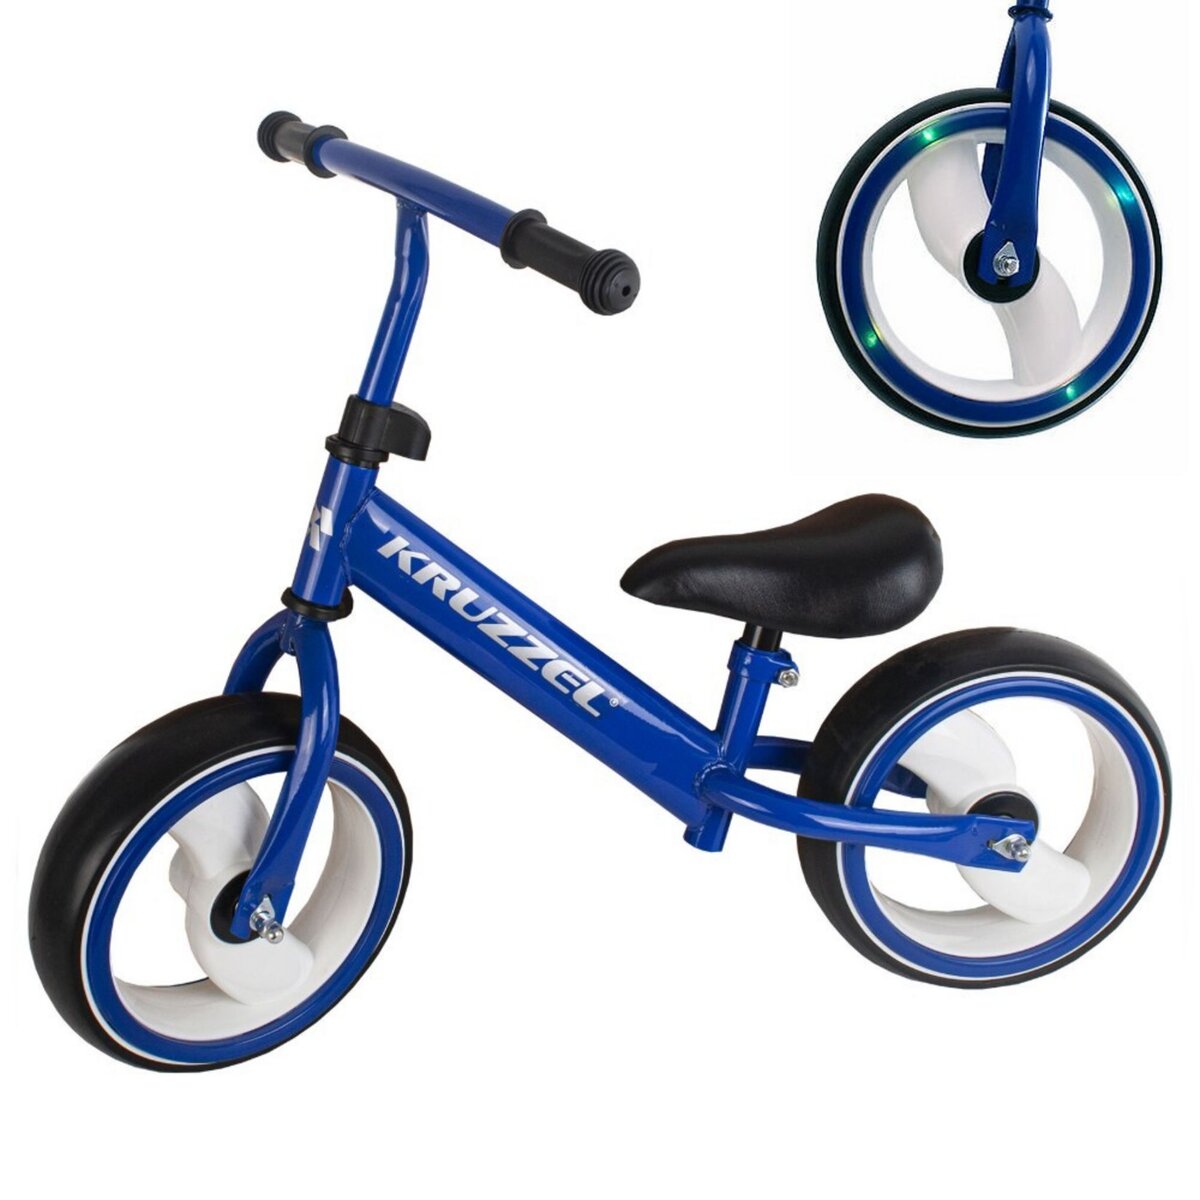 Draisienne bleue + casque vélo enfant